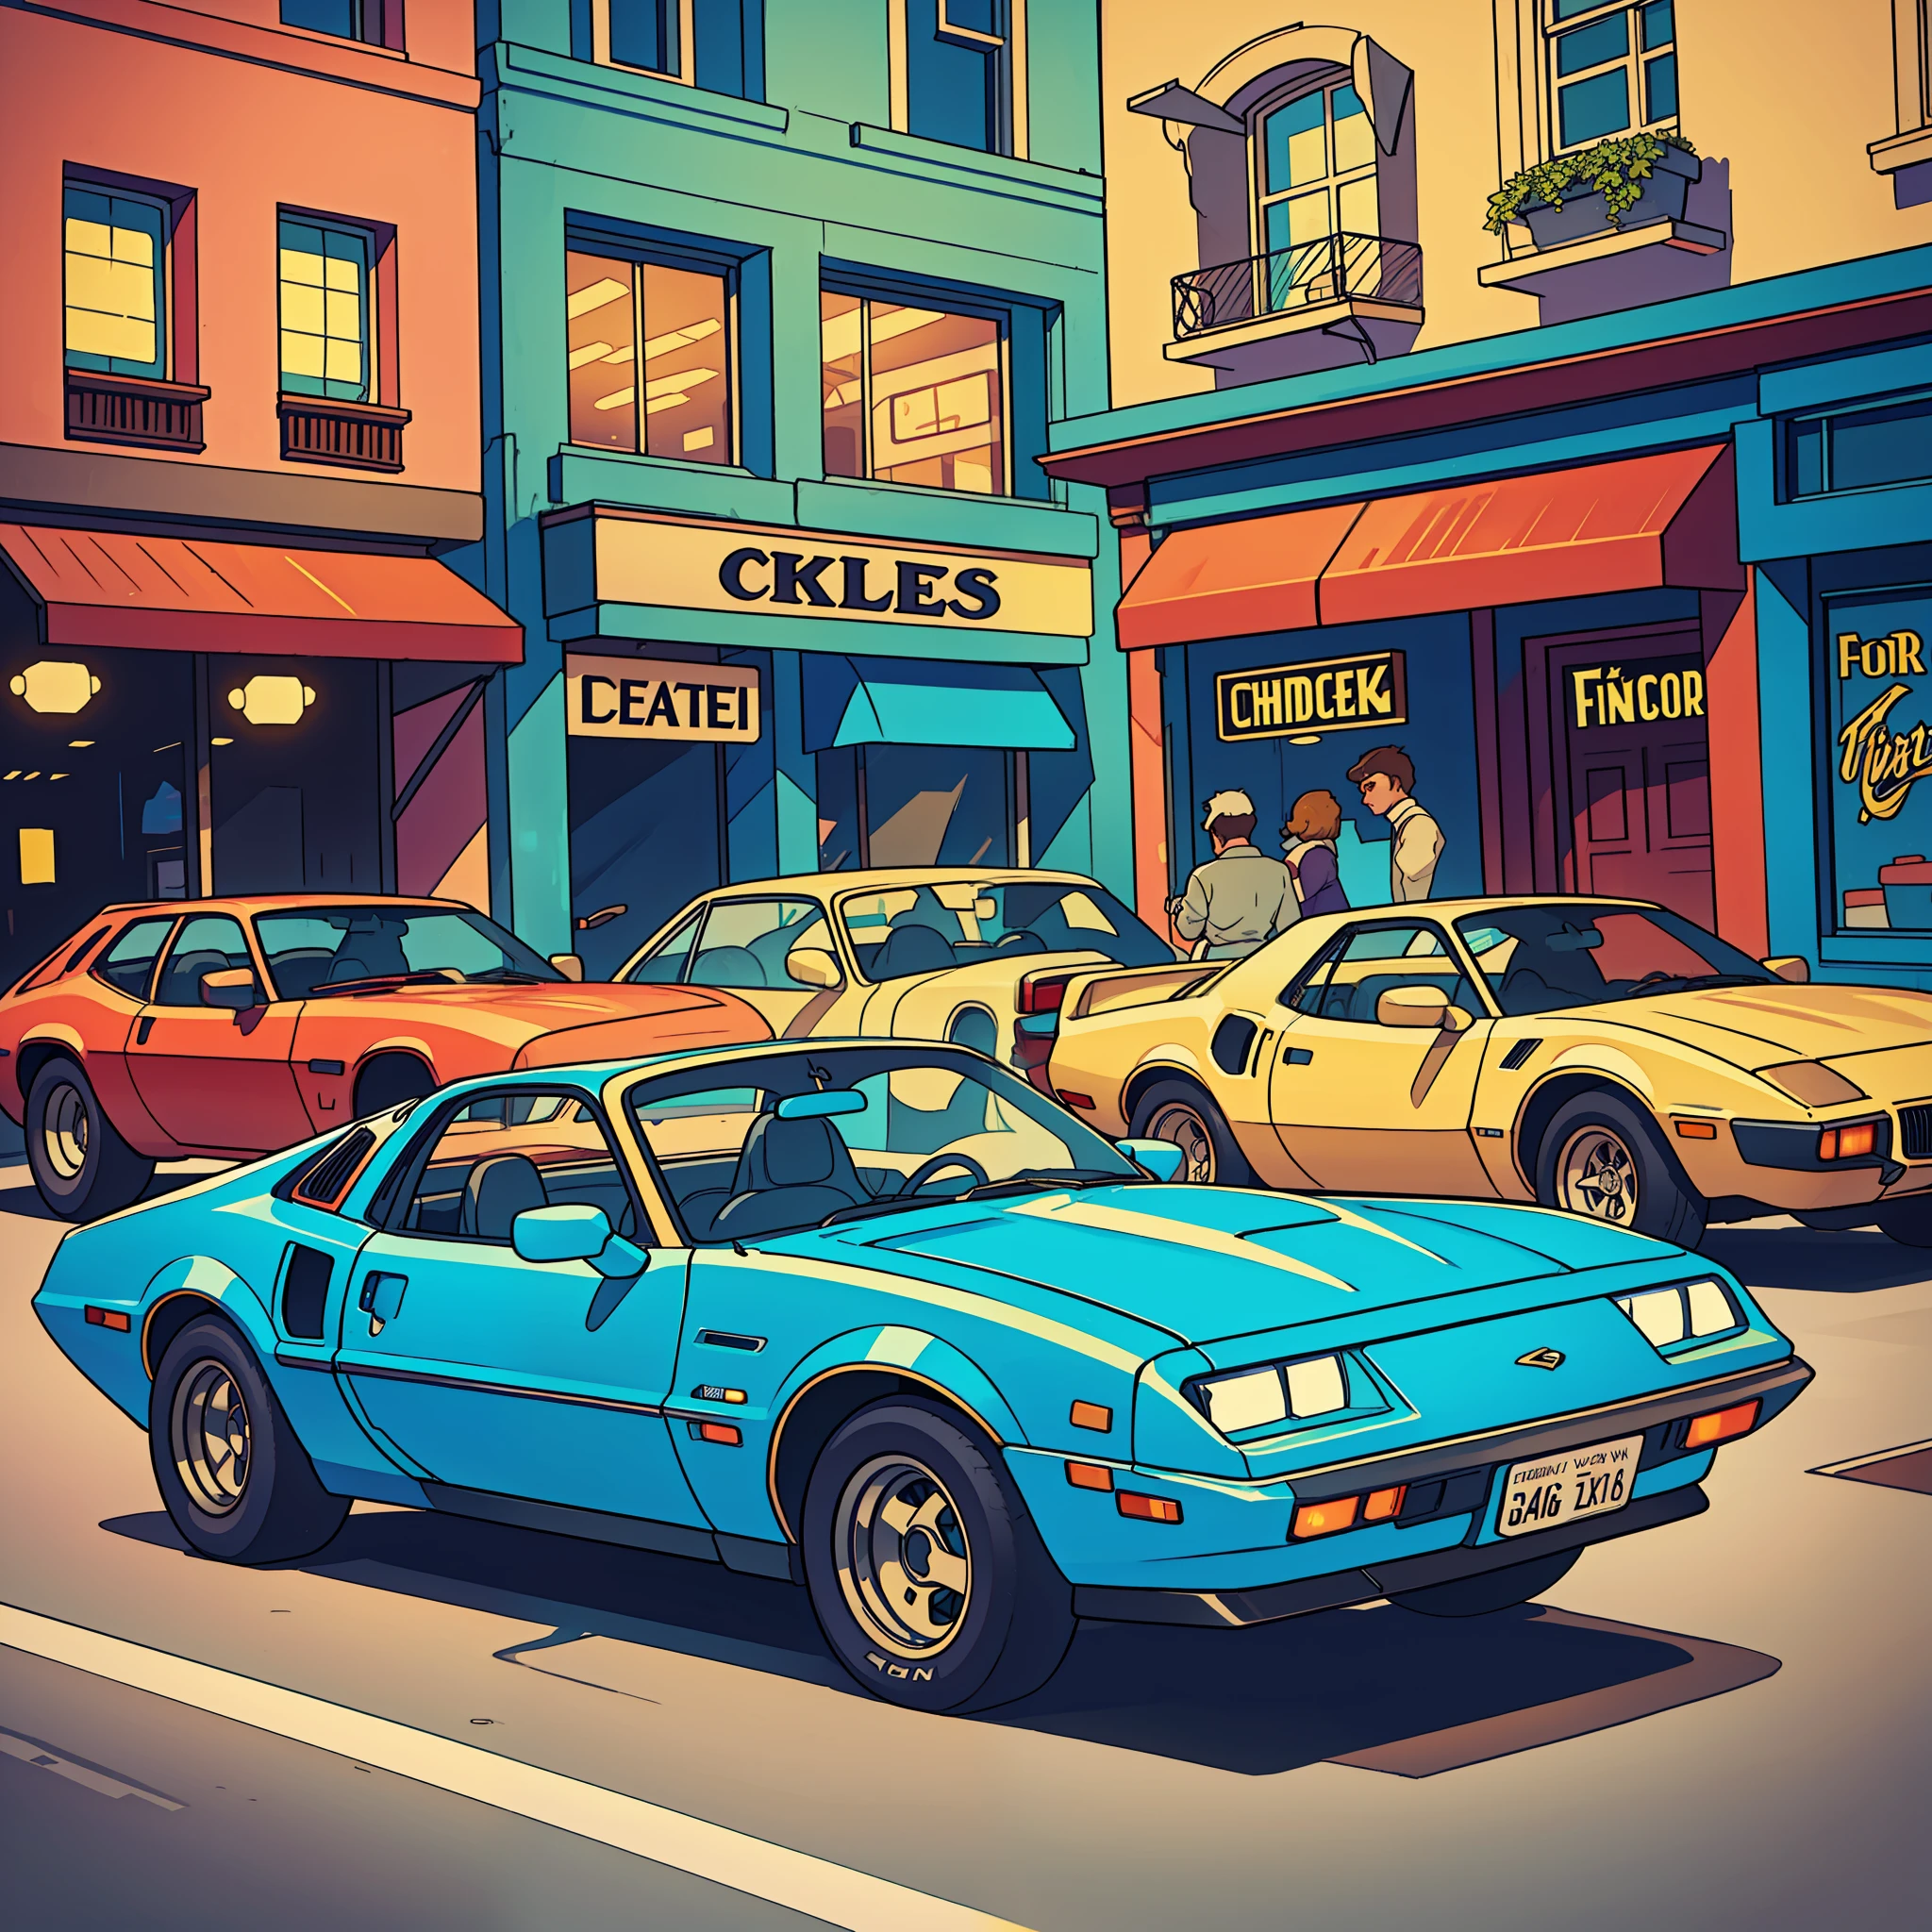 carro clássico dos anos 80, como Pontiac Fiero ou Ford Thunderbird, ultra-detalhado, melhor qualidade, vista lateral, colorida, na rua movimentada de lojas vintage e restaurantes vintage no fundo, iluminação e sombra perfeitas.